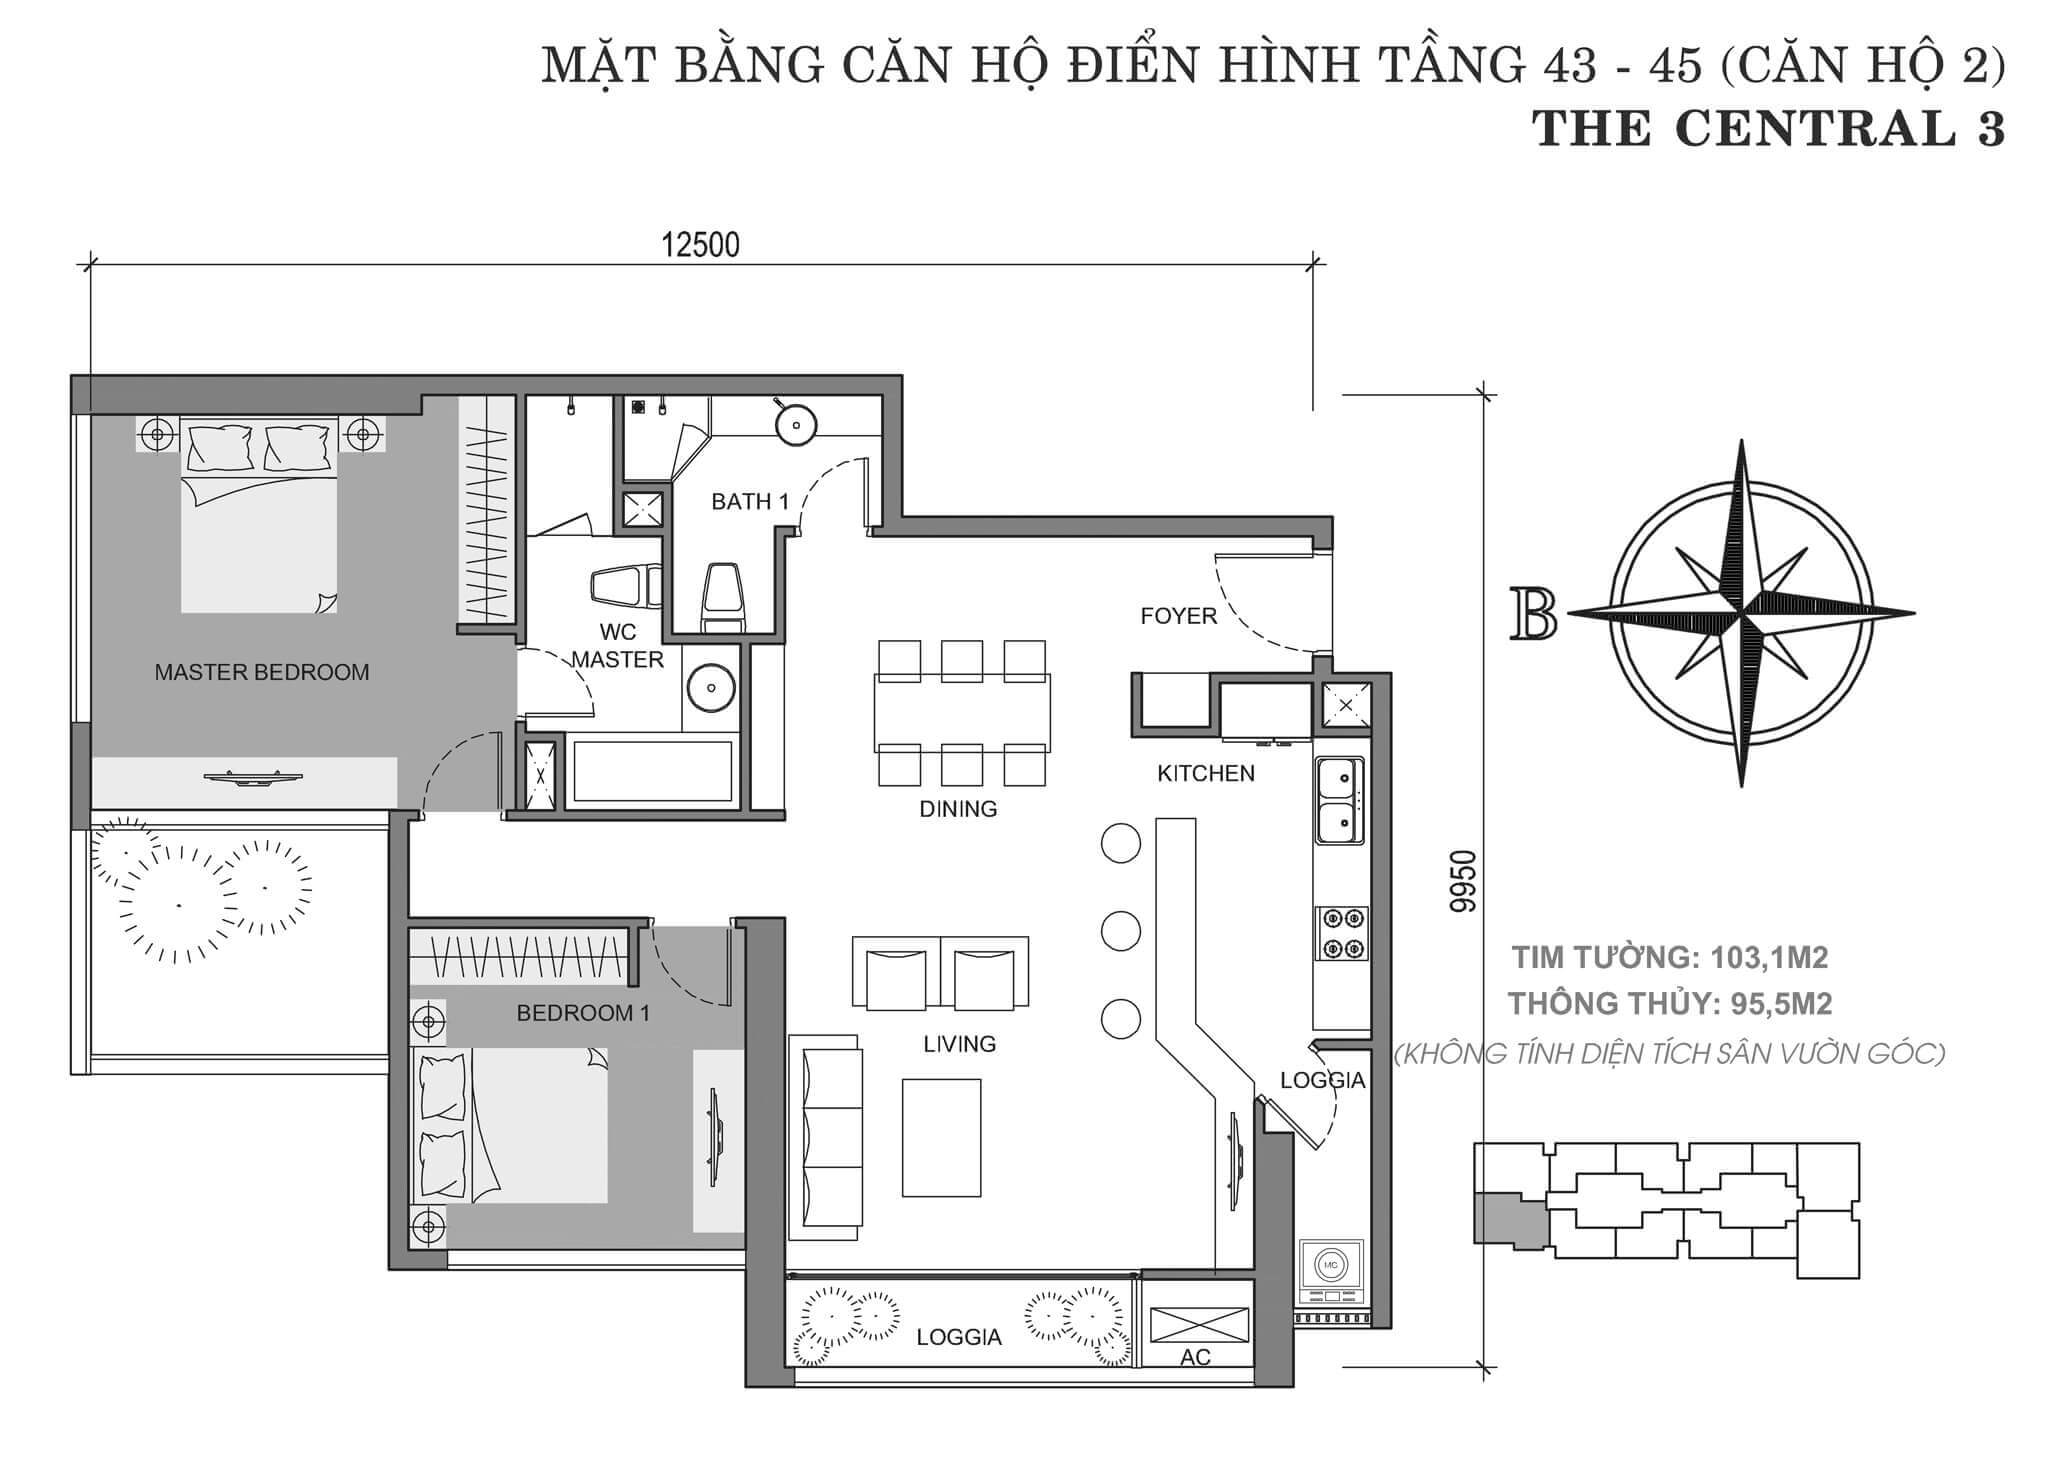 layout căn hộ số 2 tòa Central 3 tầng 43-45